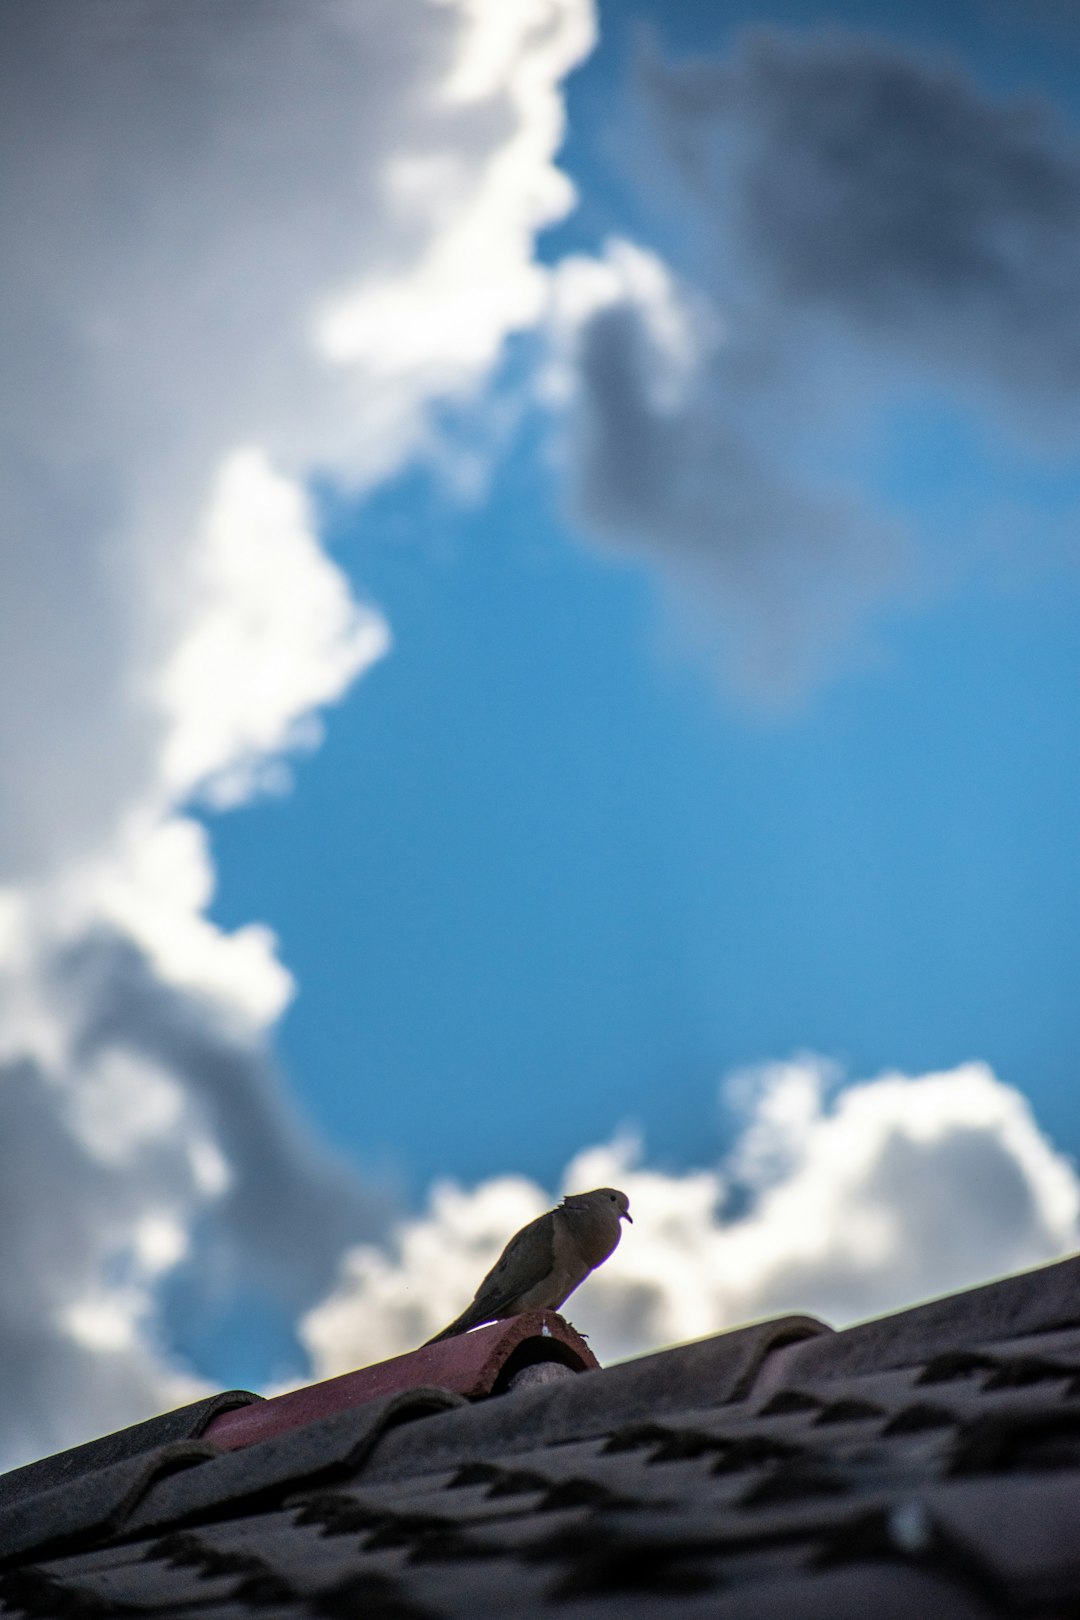 brown bird on brown wooden stick under blue sky during daytime